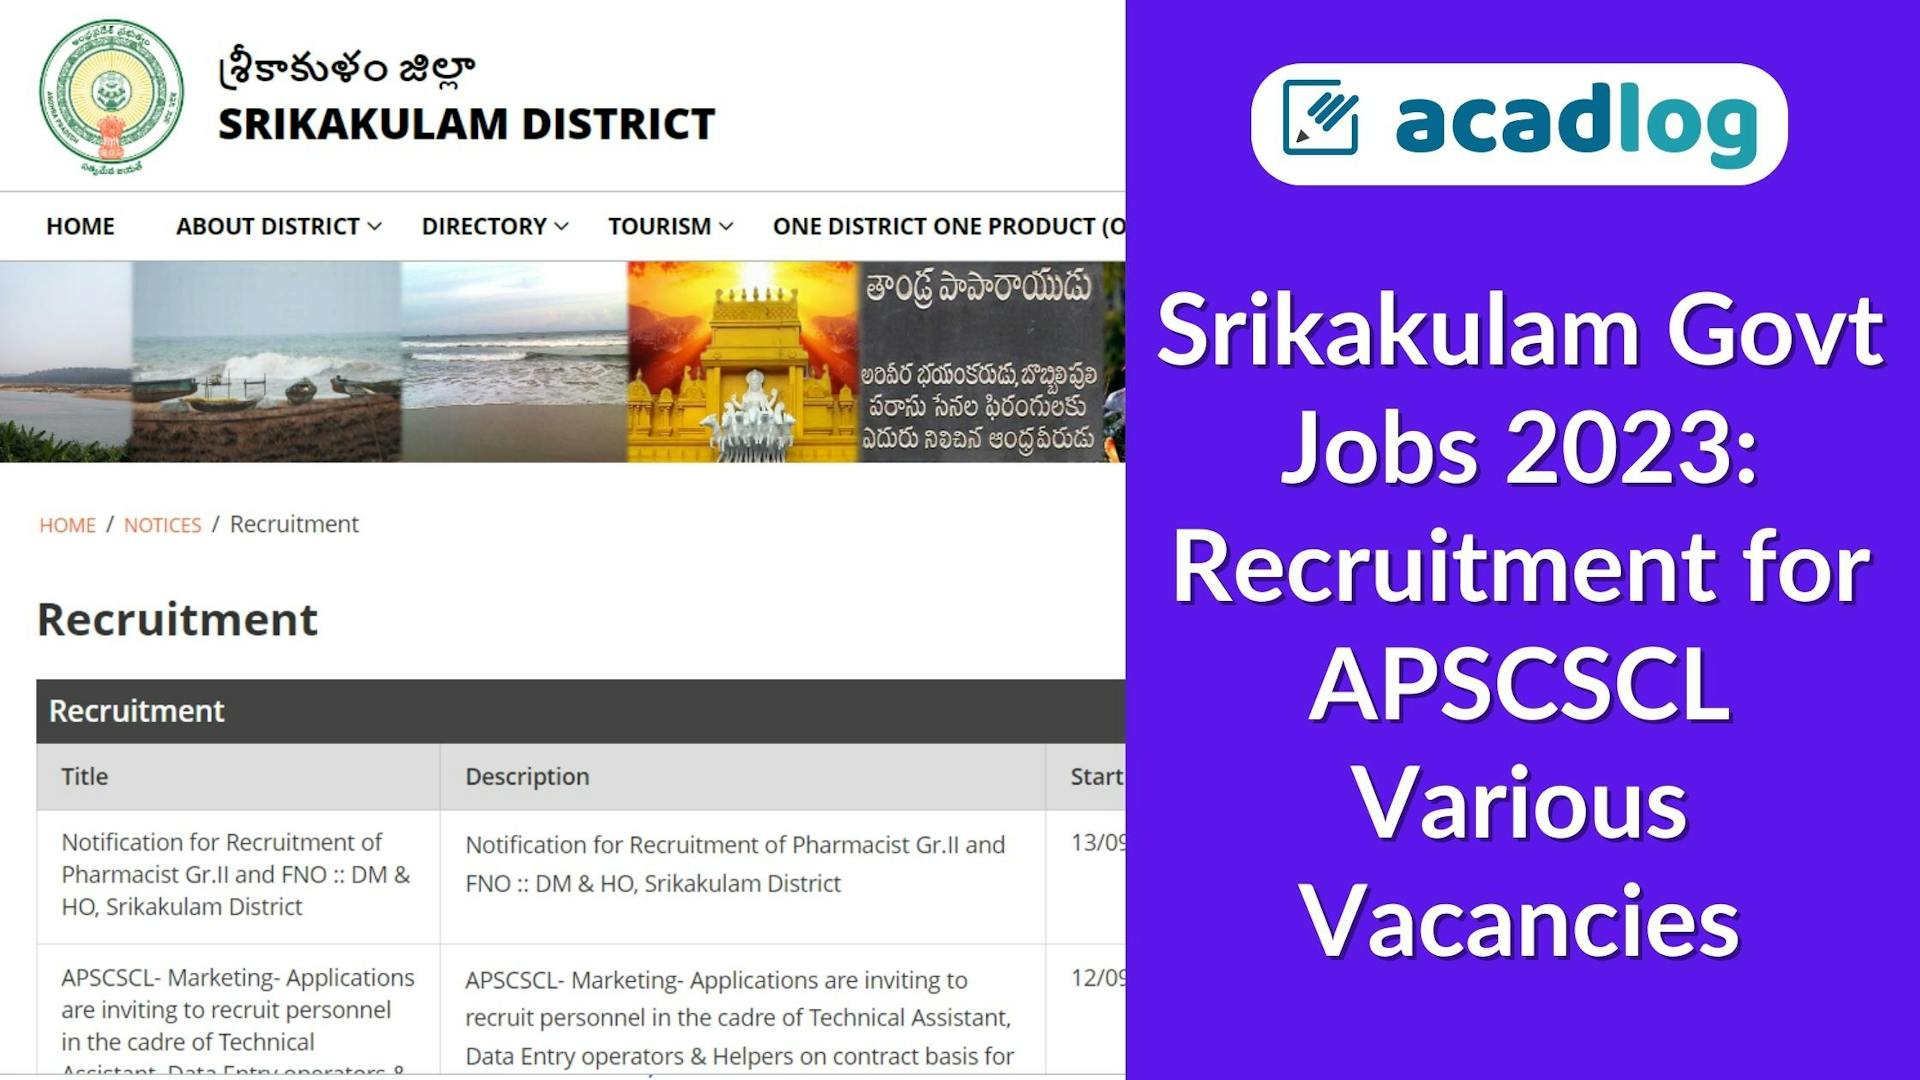 Srikakulam Govt Jobs 2023: Recruitment for APSCSCL Various Vacancies